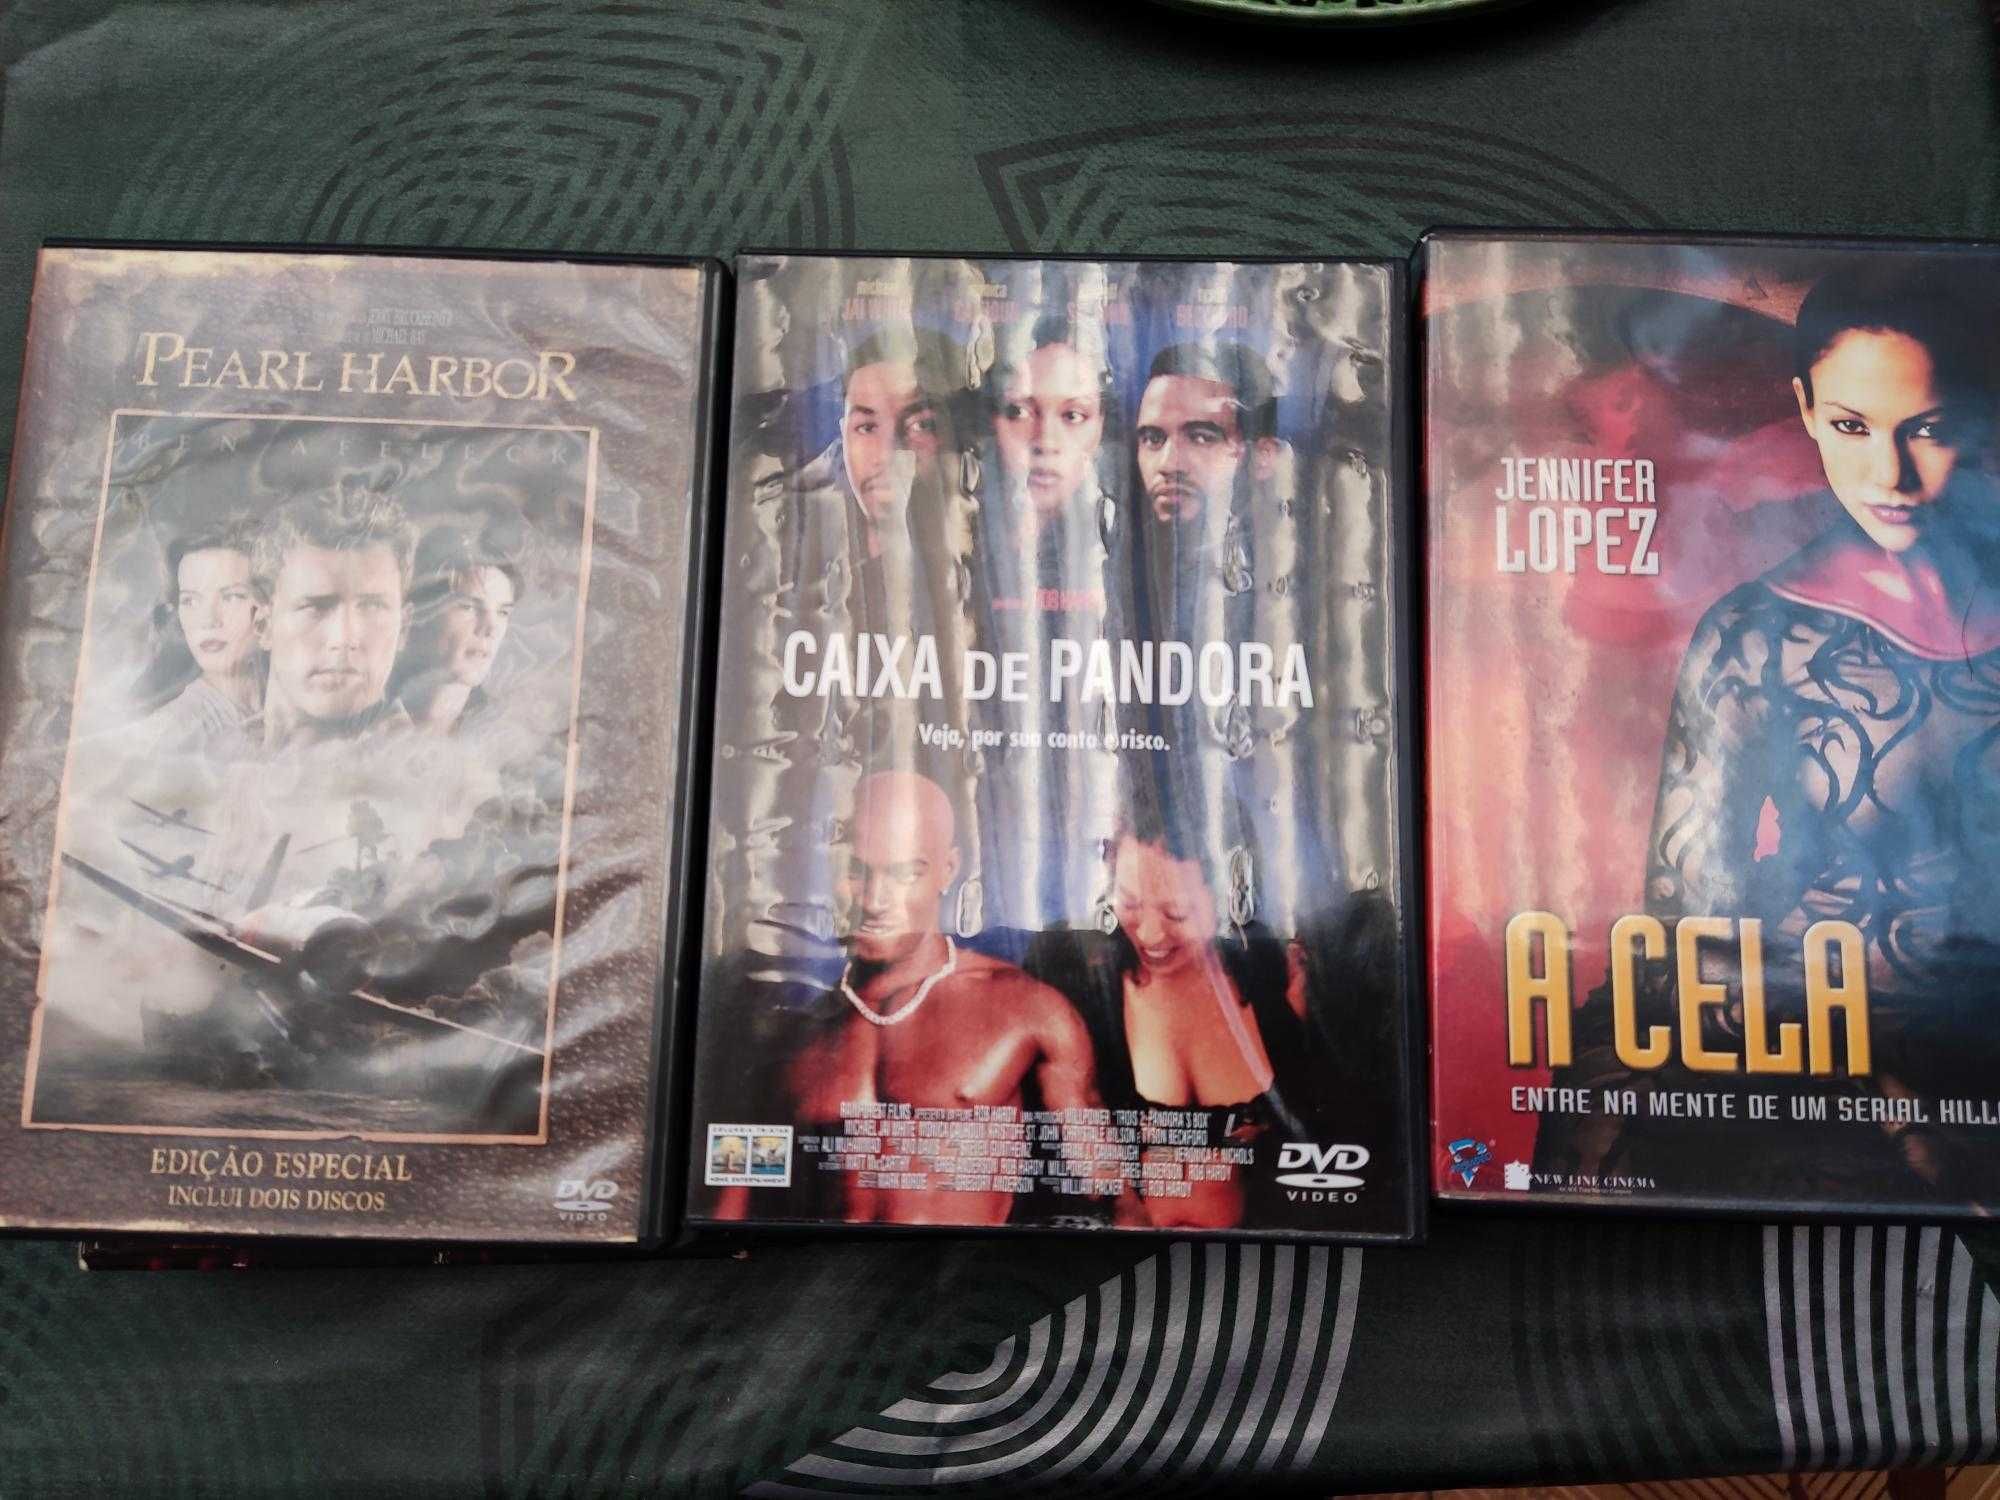 DVD's originais (capa origem)